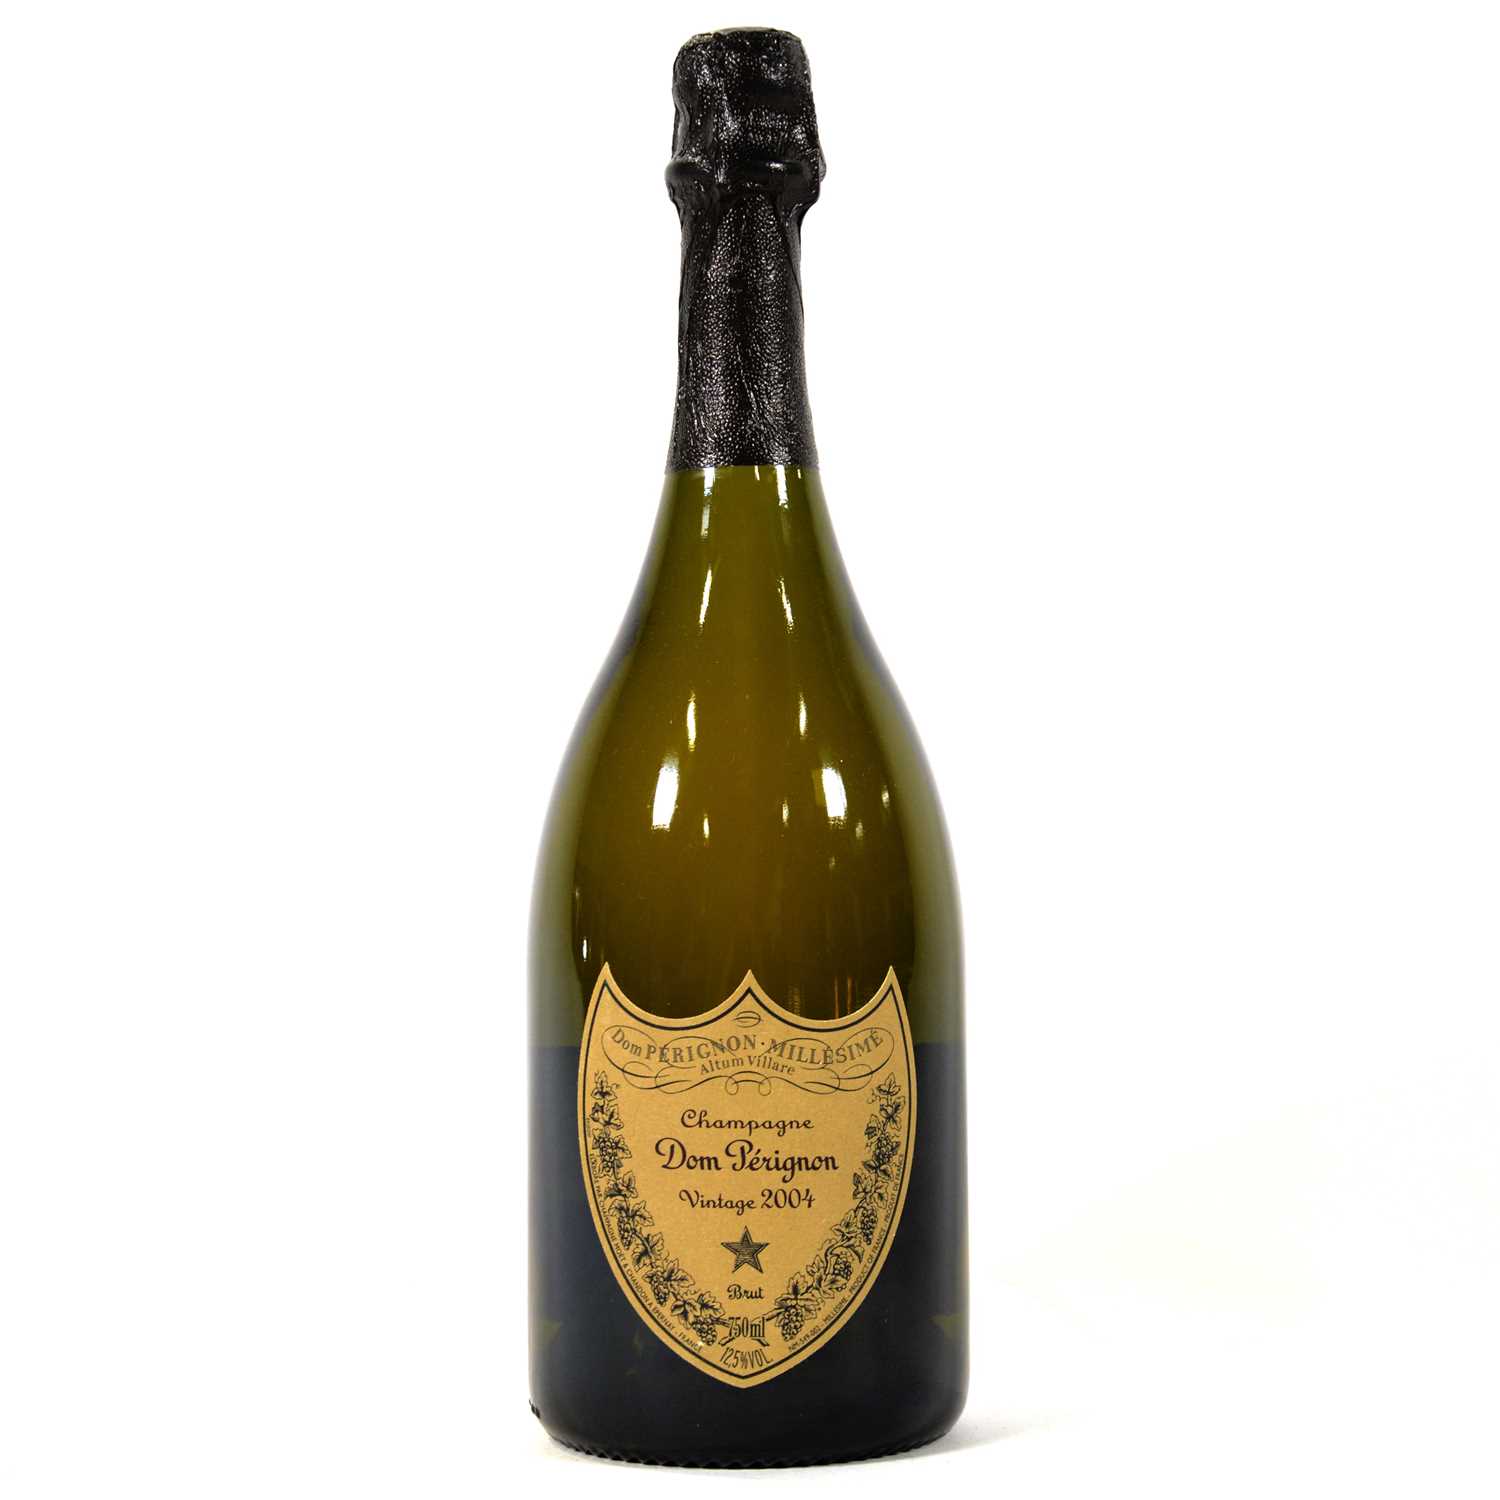 Lot 44 - Moët et Chandon, Cuvée Dom Perignon Champagne, 2004 vintage